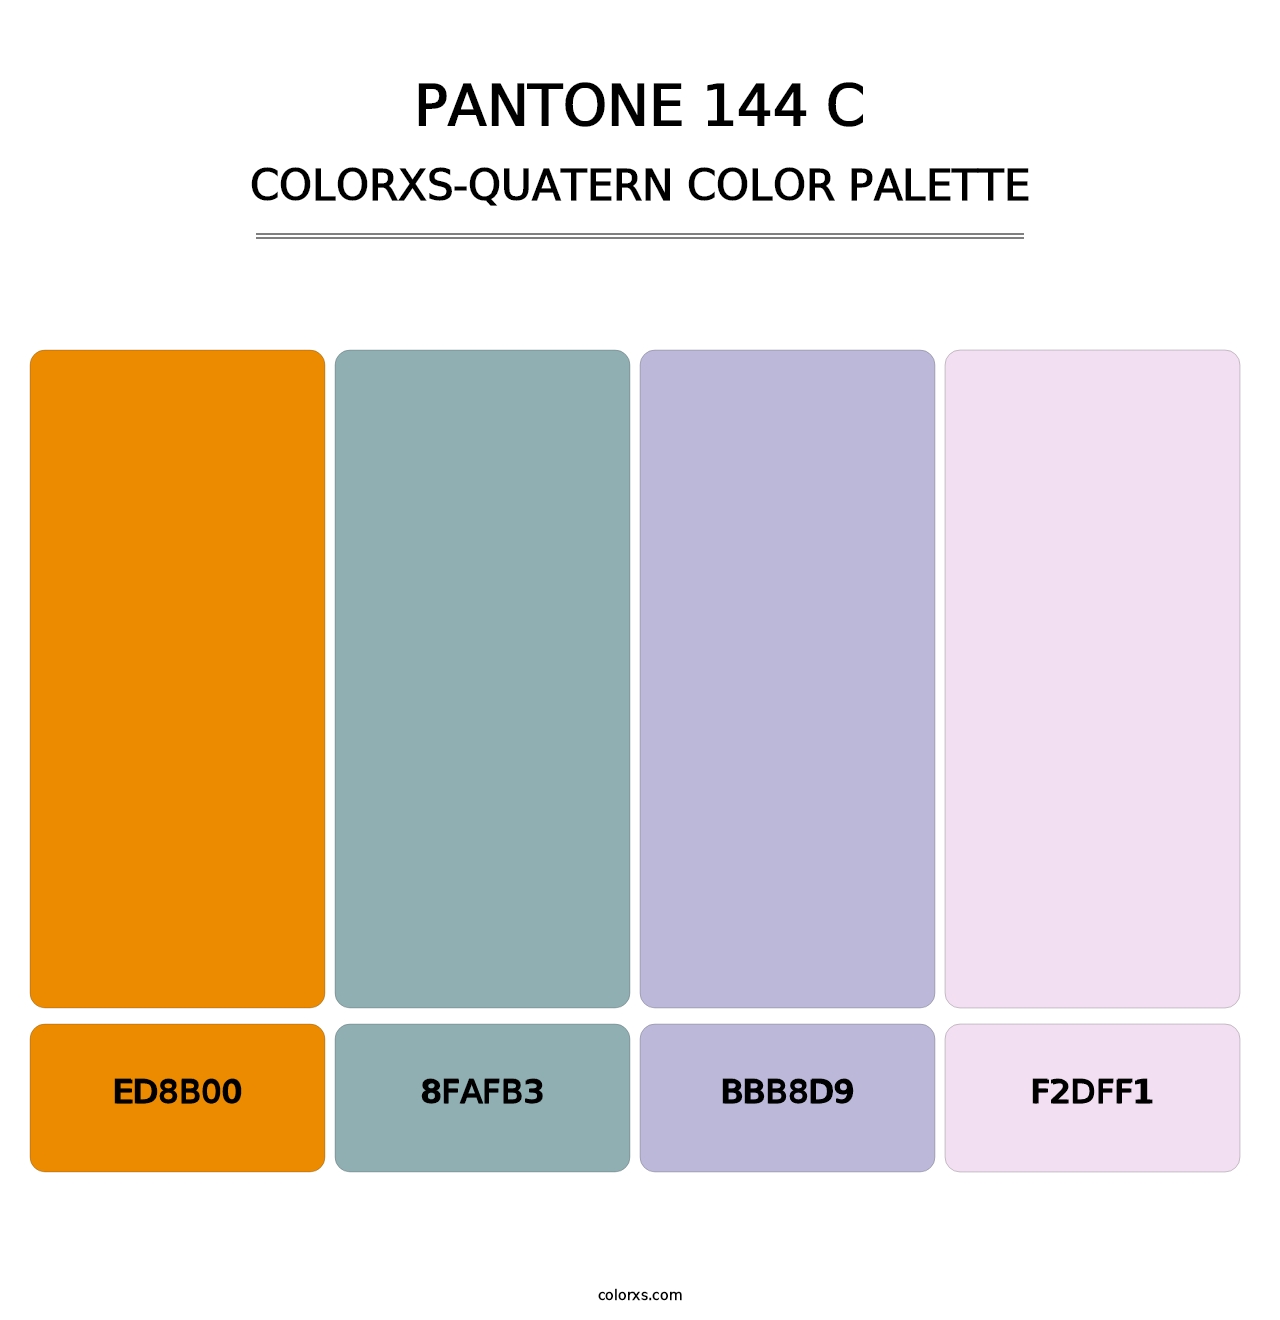 PANTONE 144 C - Colorxs Quatern Palette